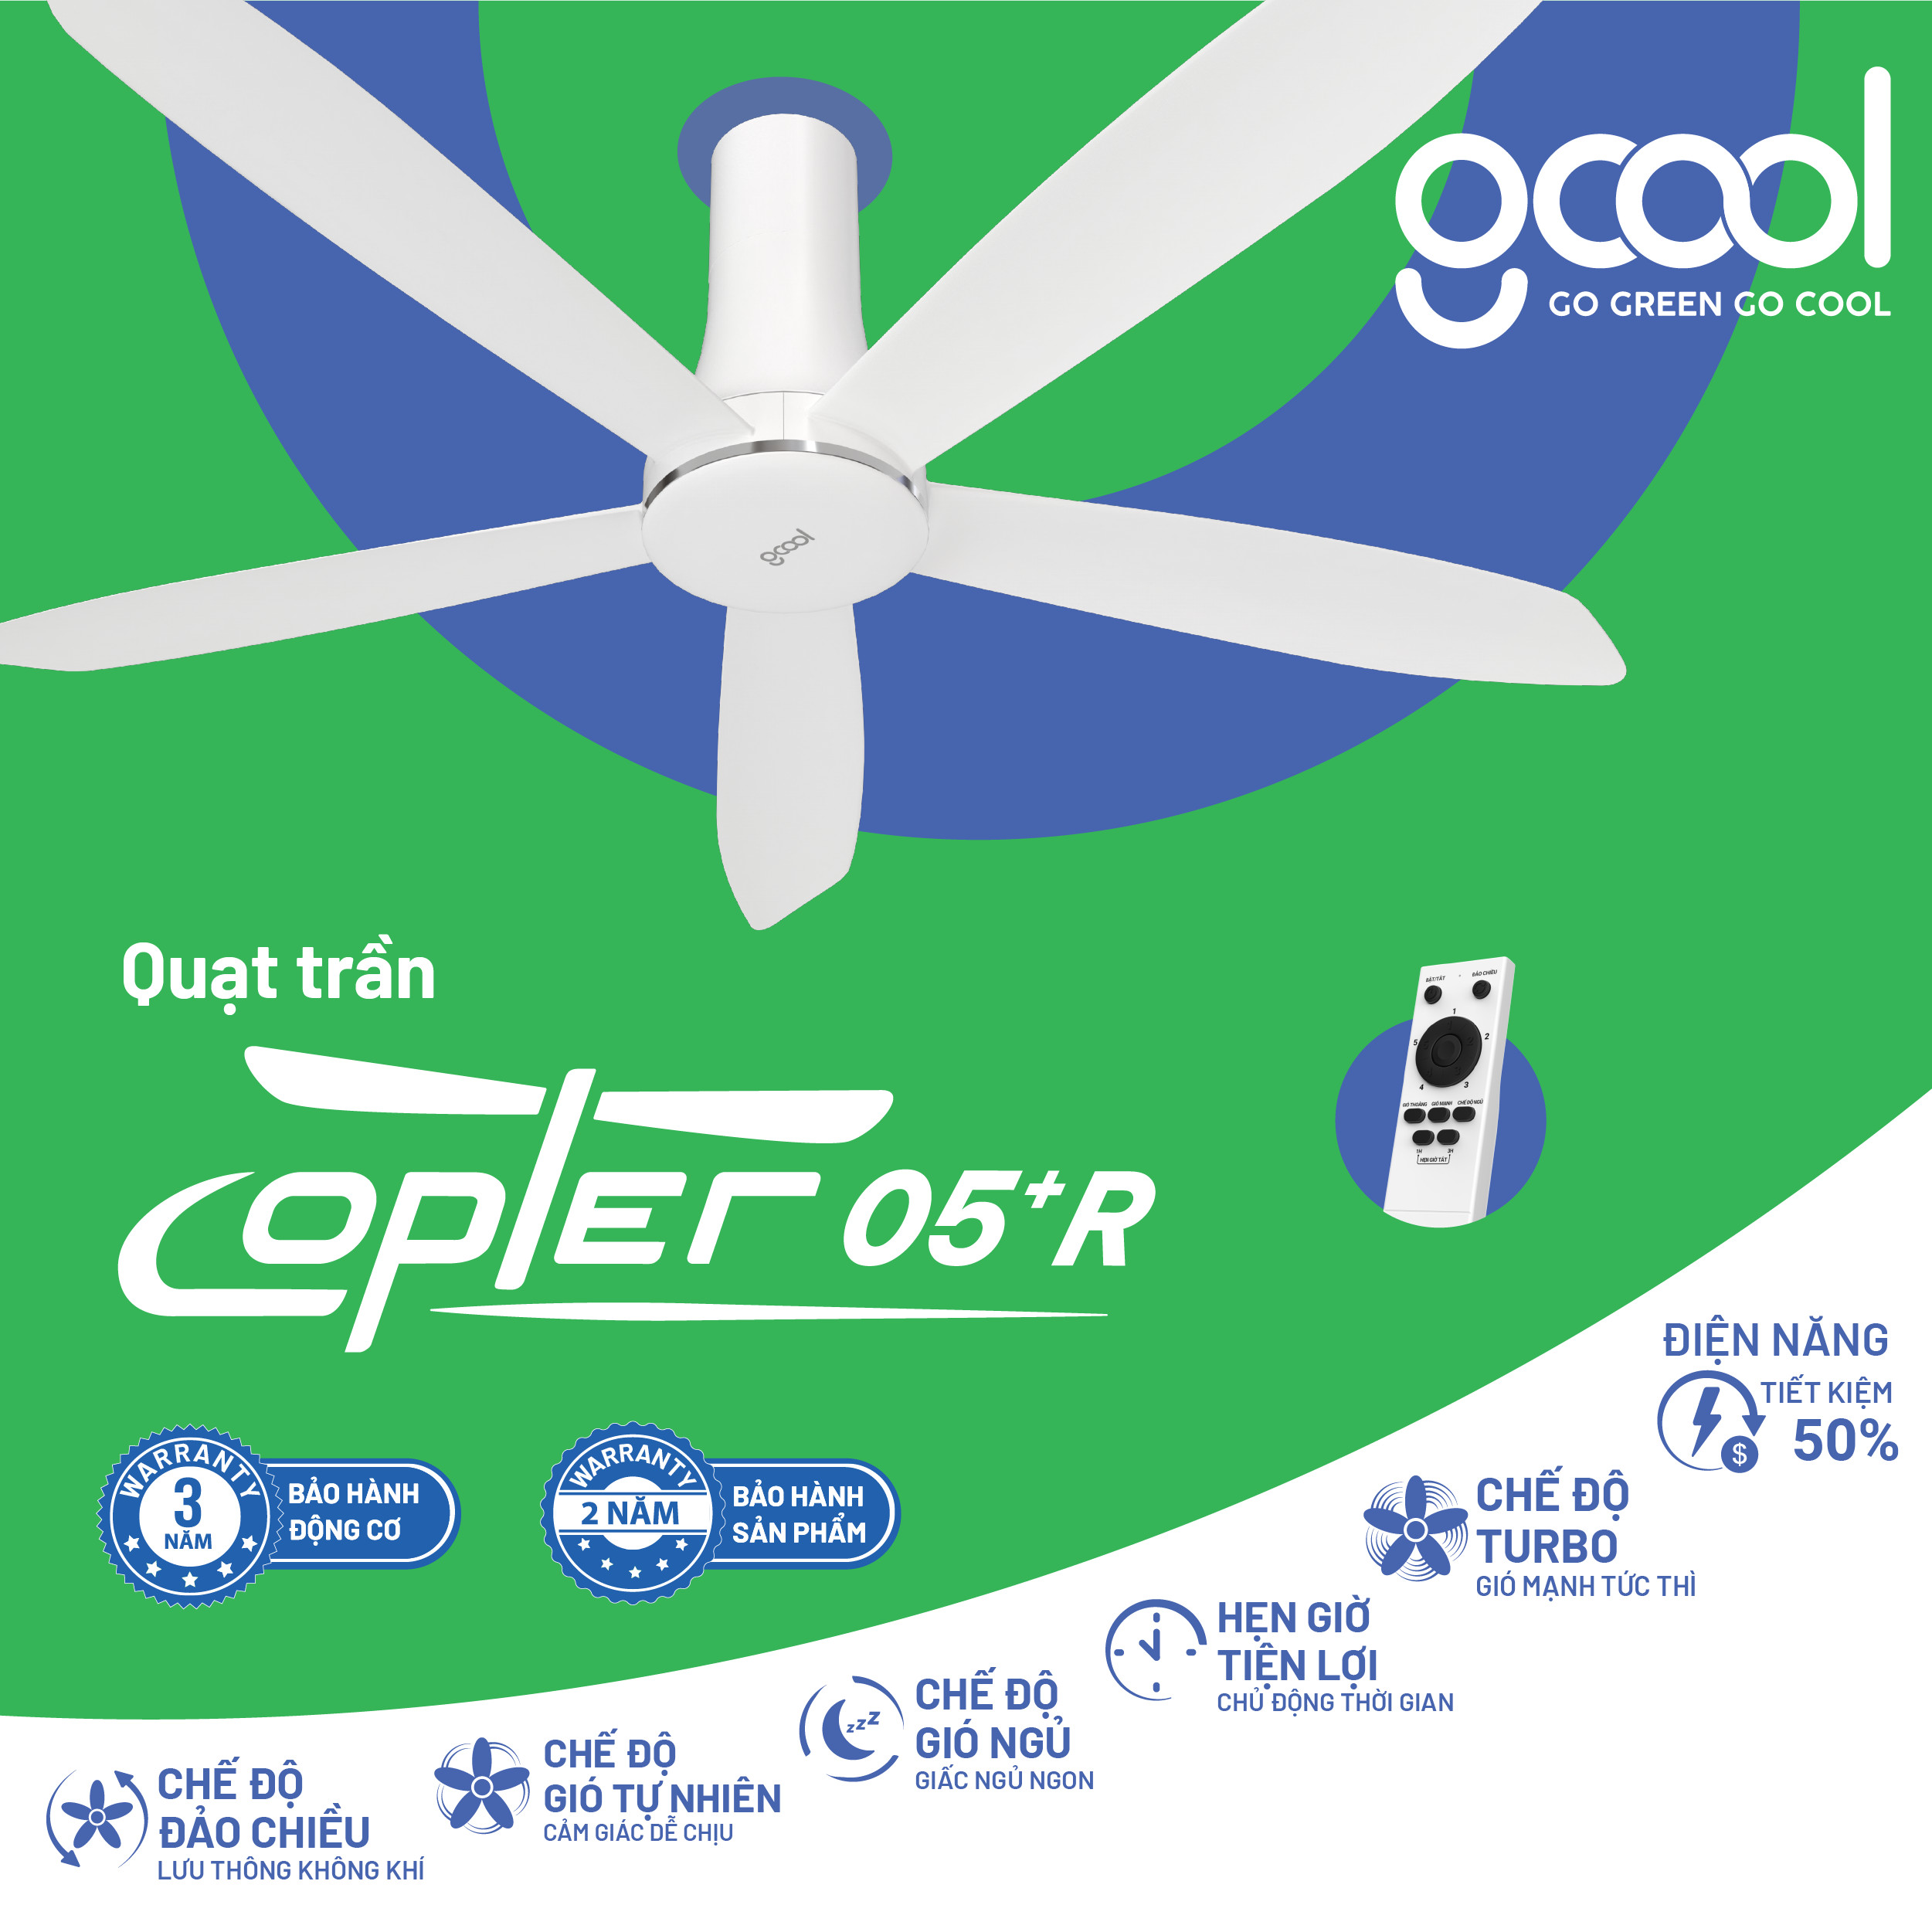 Quạt trần GCool Go Green Go Cool hiệu suất cao Smart DC Copter 05 Plus R - Hàng chính hãng